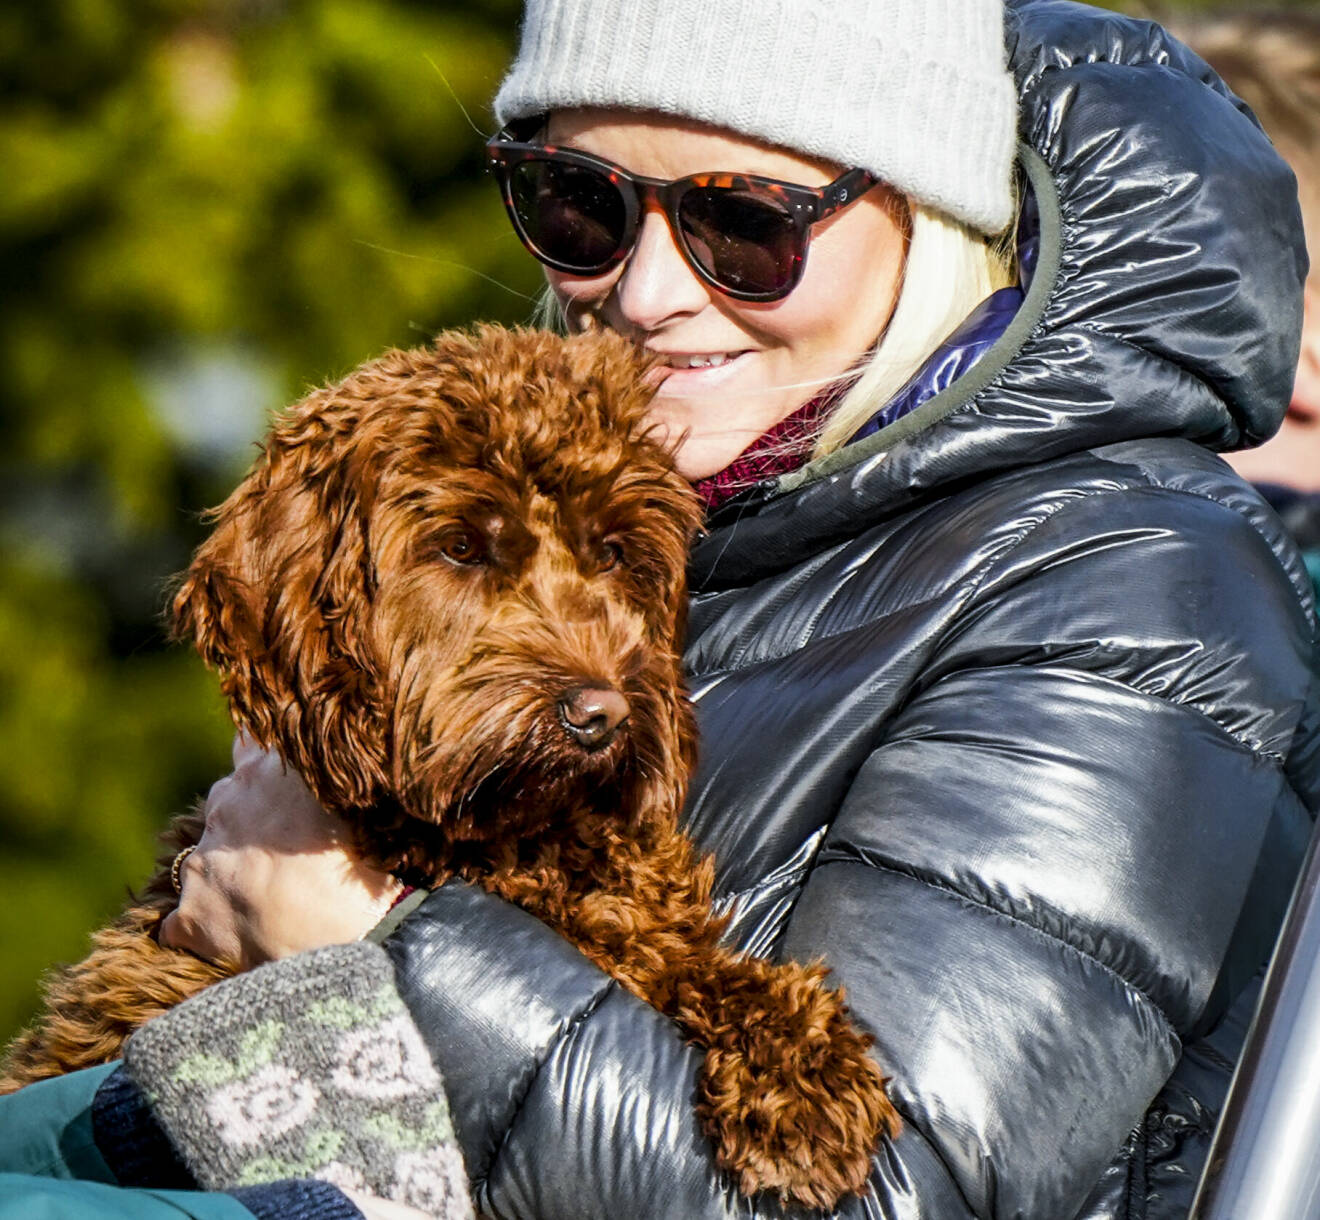 Kronprinsessan Mette-Marit i Holmenkollen med sin hund Molly Fiskebolle